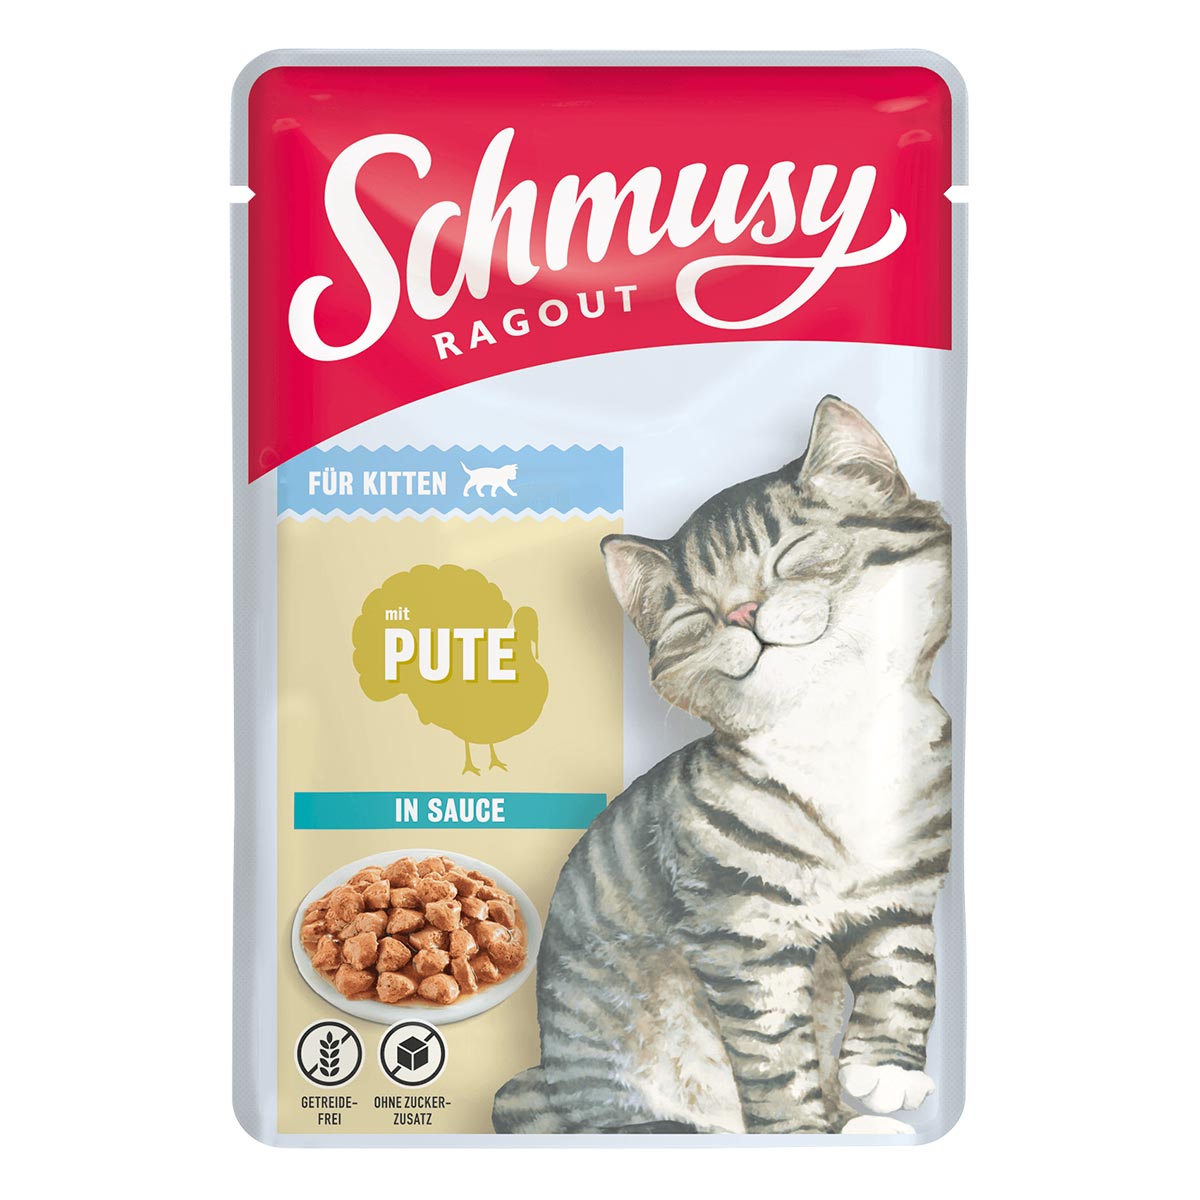 Schmusy Ragout für Kitten mit Pute in Sauce 22x100g von Schmusy